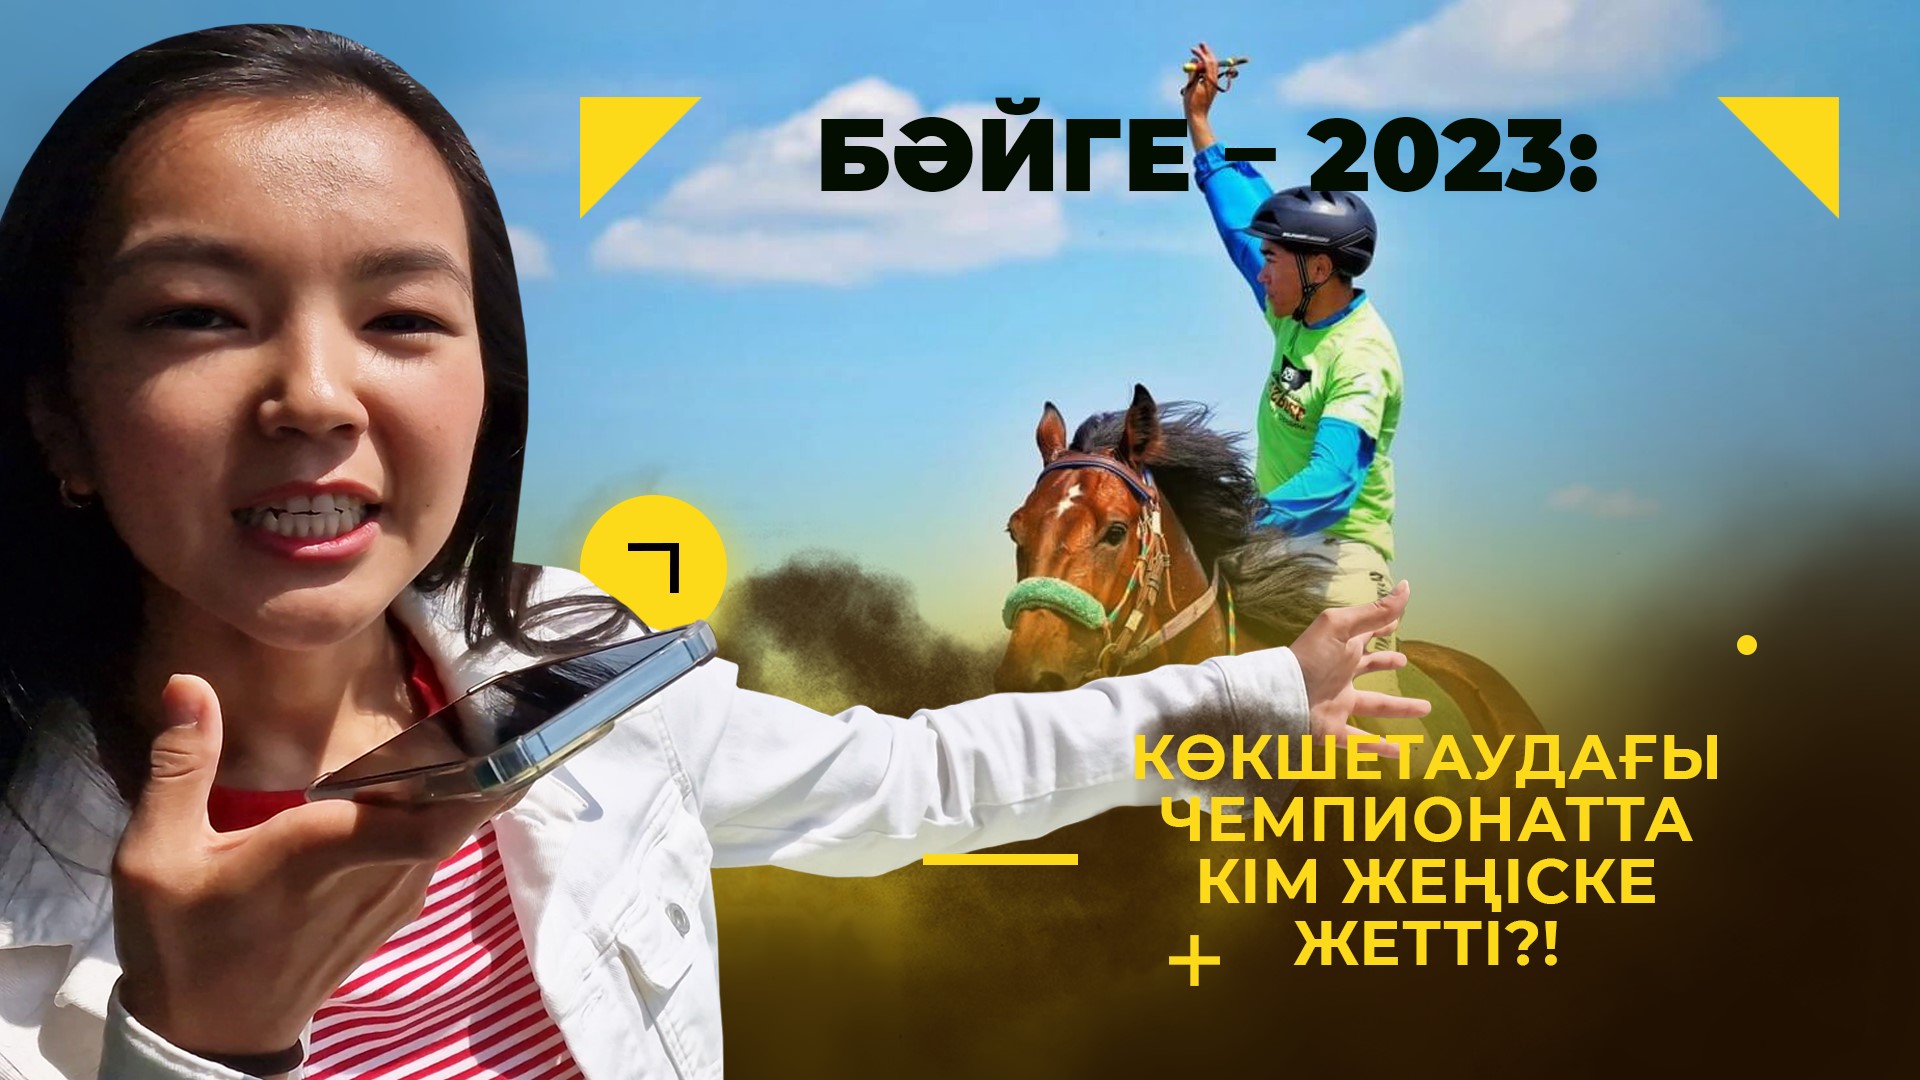 Как был организован чемпионат байге Казахстана в Кокшетау?